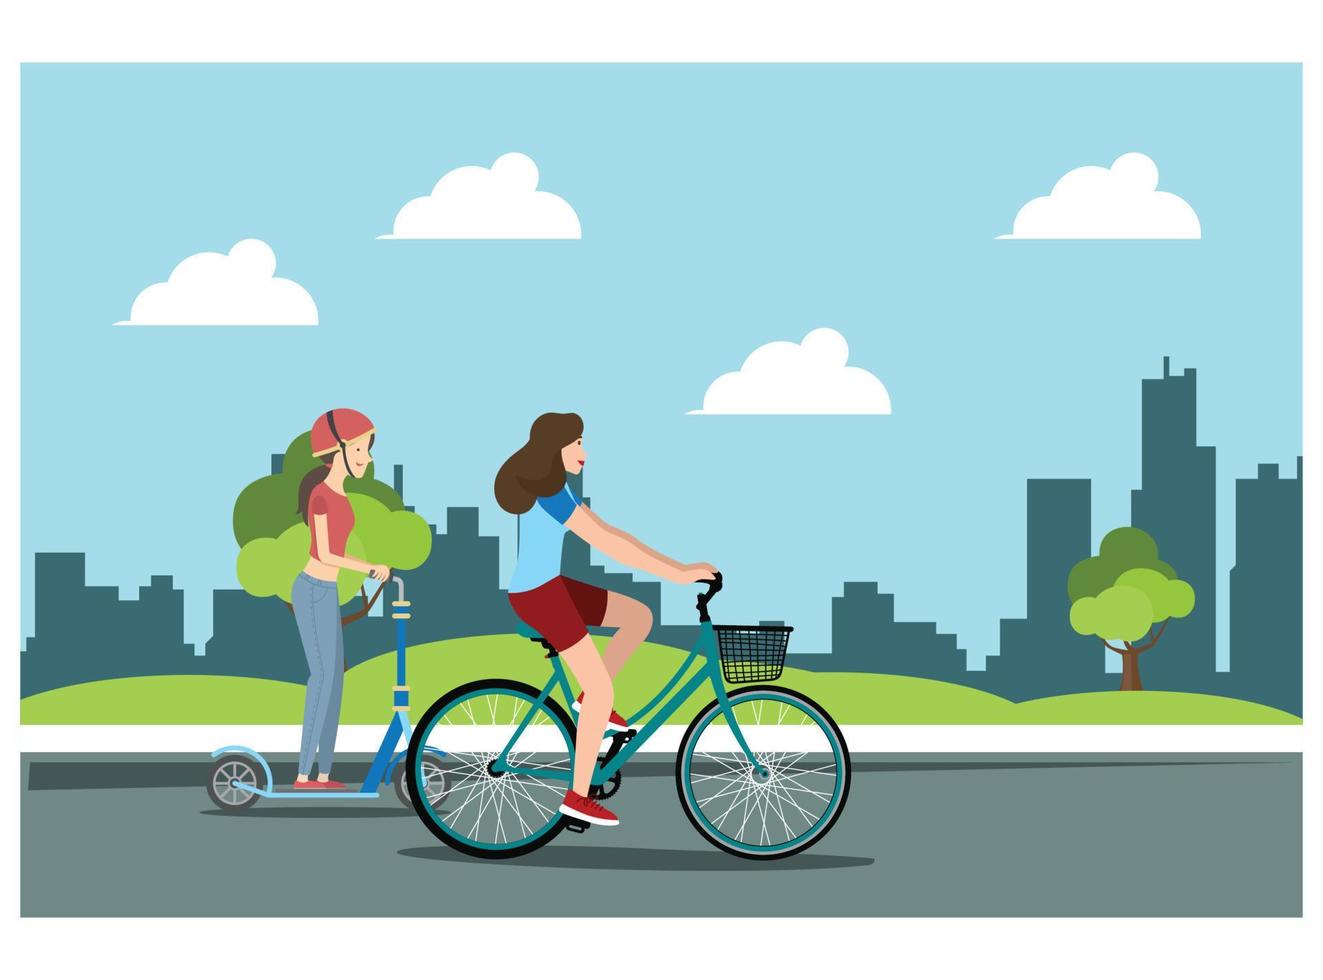 jovem andando de bicicleta esportiva em uma estrada do parque, vetor de ilustração de bicicleta humana